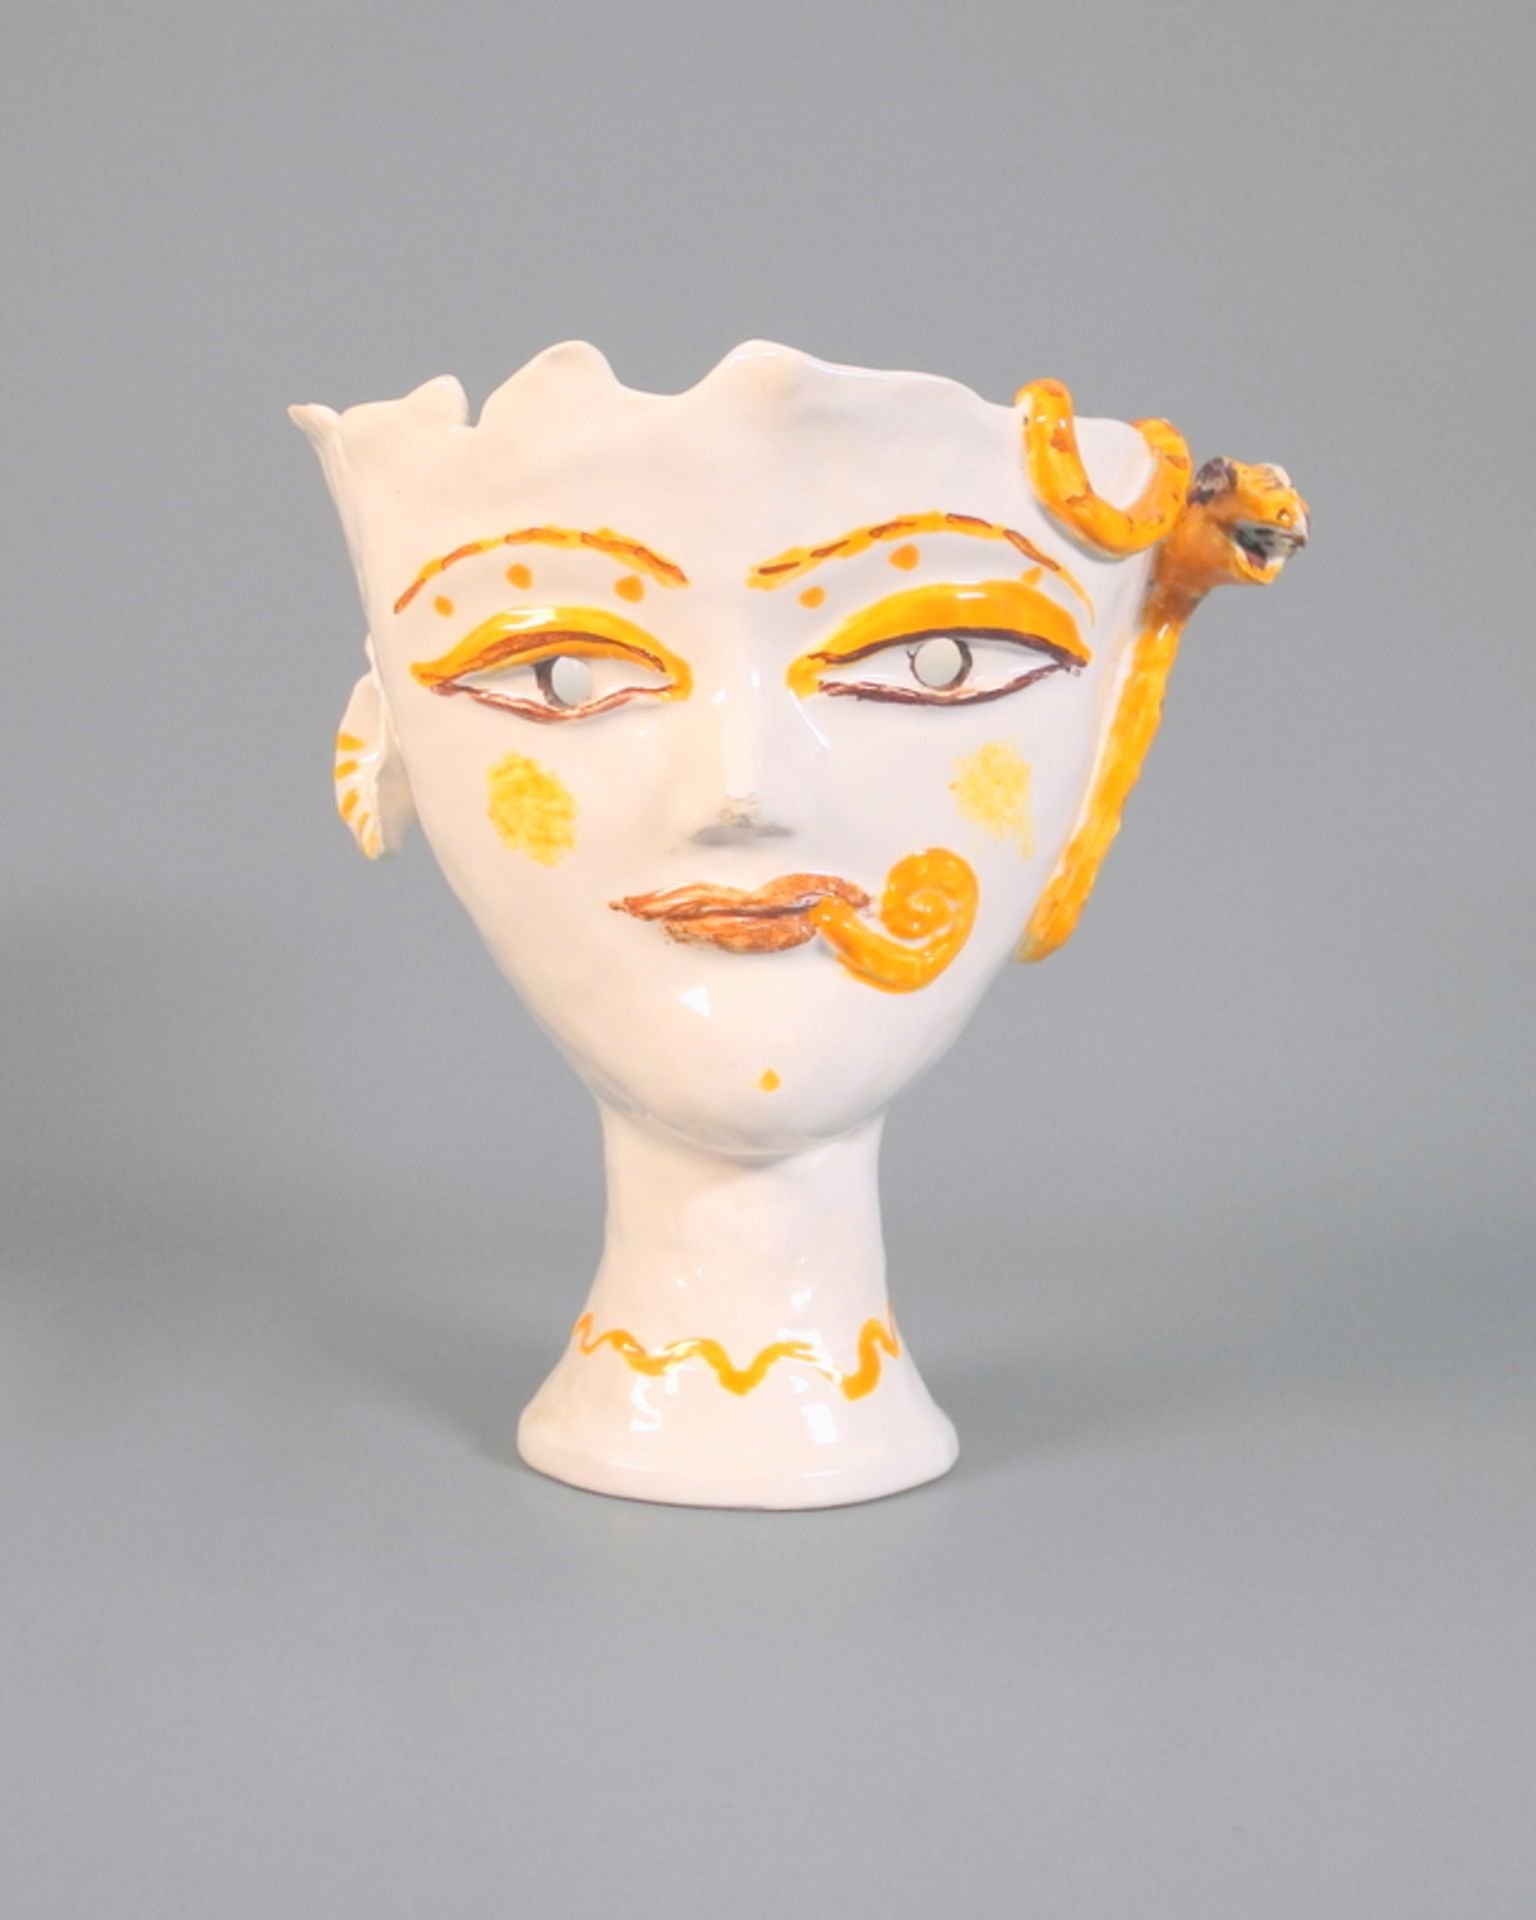 Bele Bachem, 1916 Düsseldorf - 2005 MünchenKeramik, Vase in Form eines Gesichtes, gl